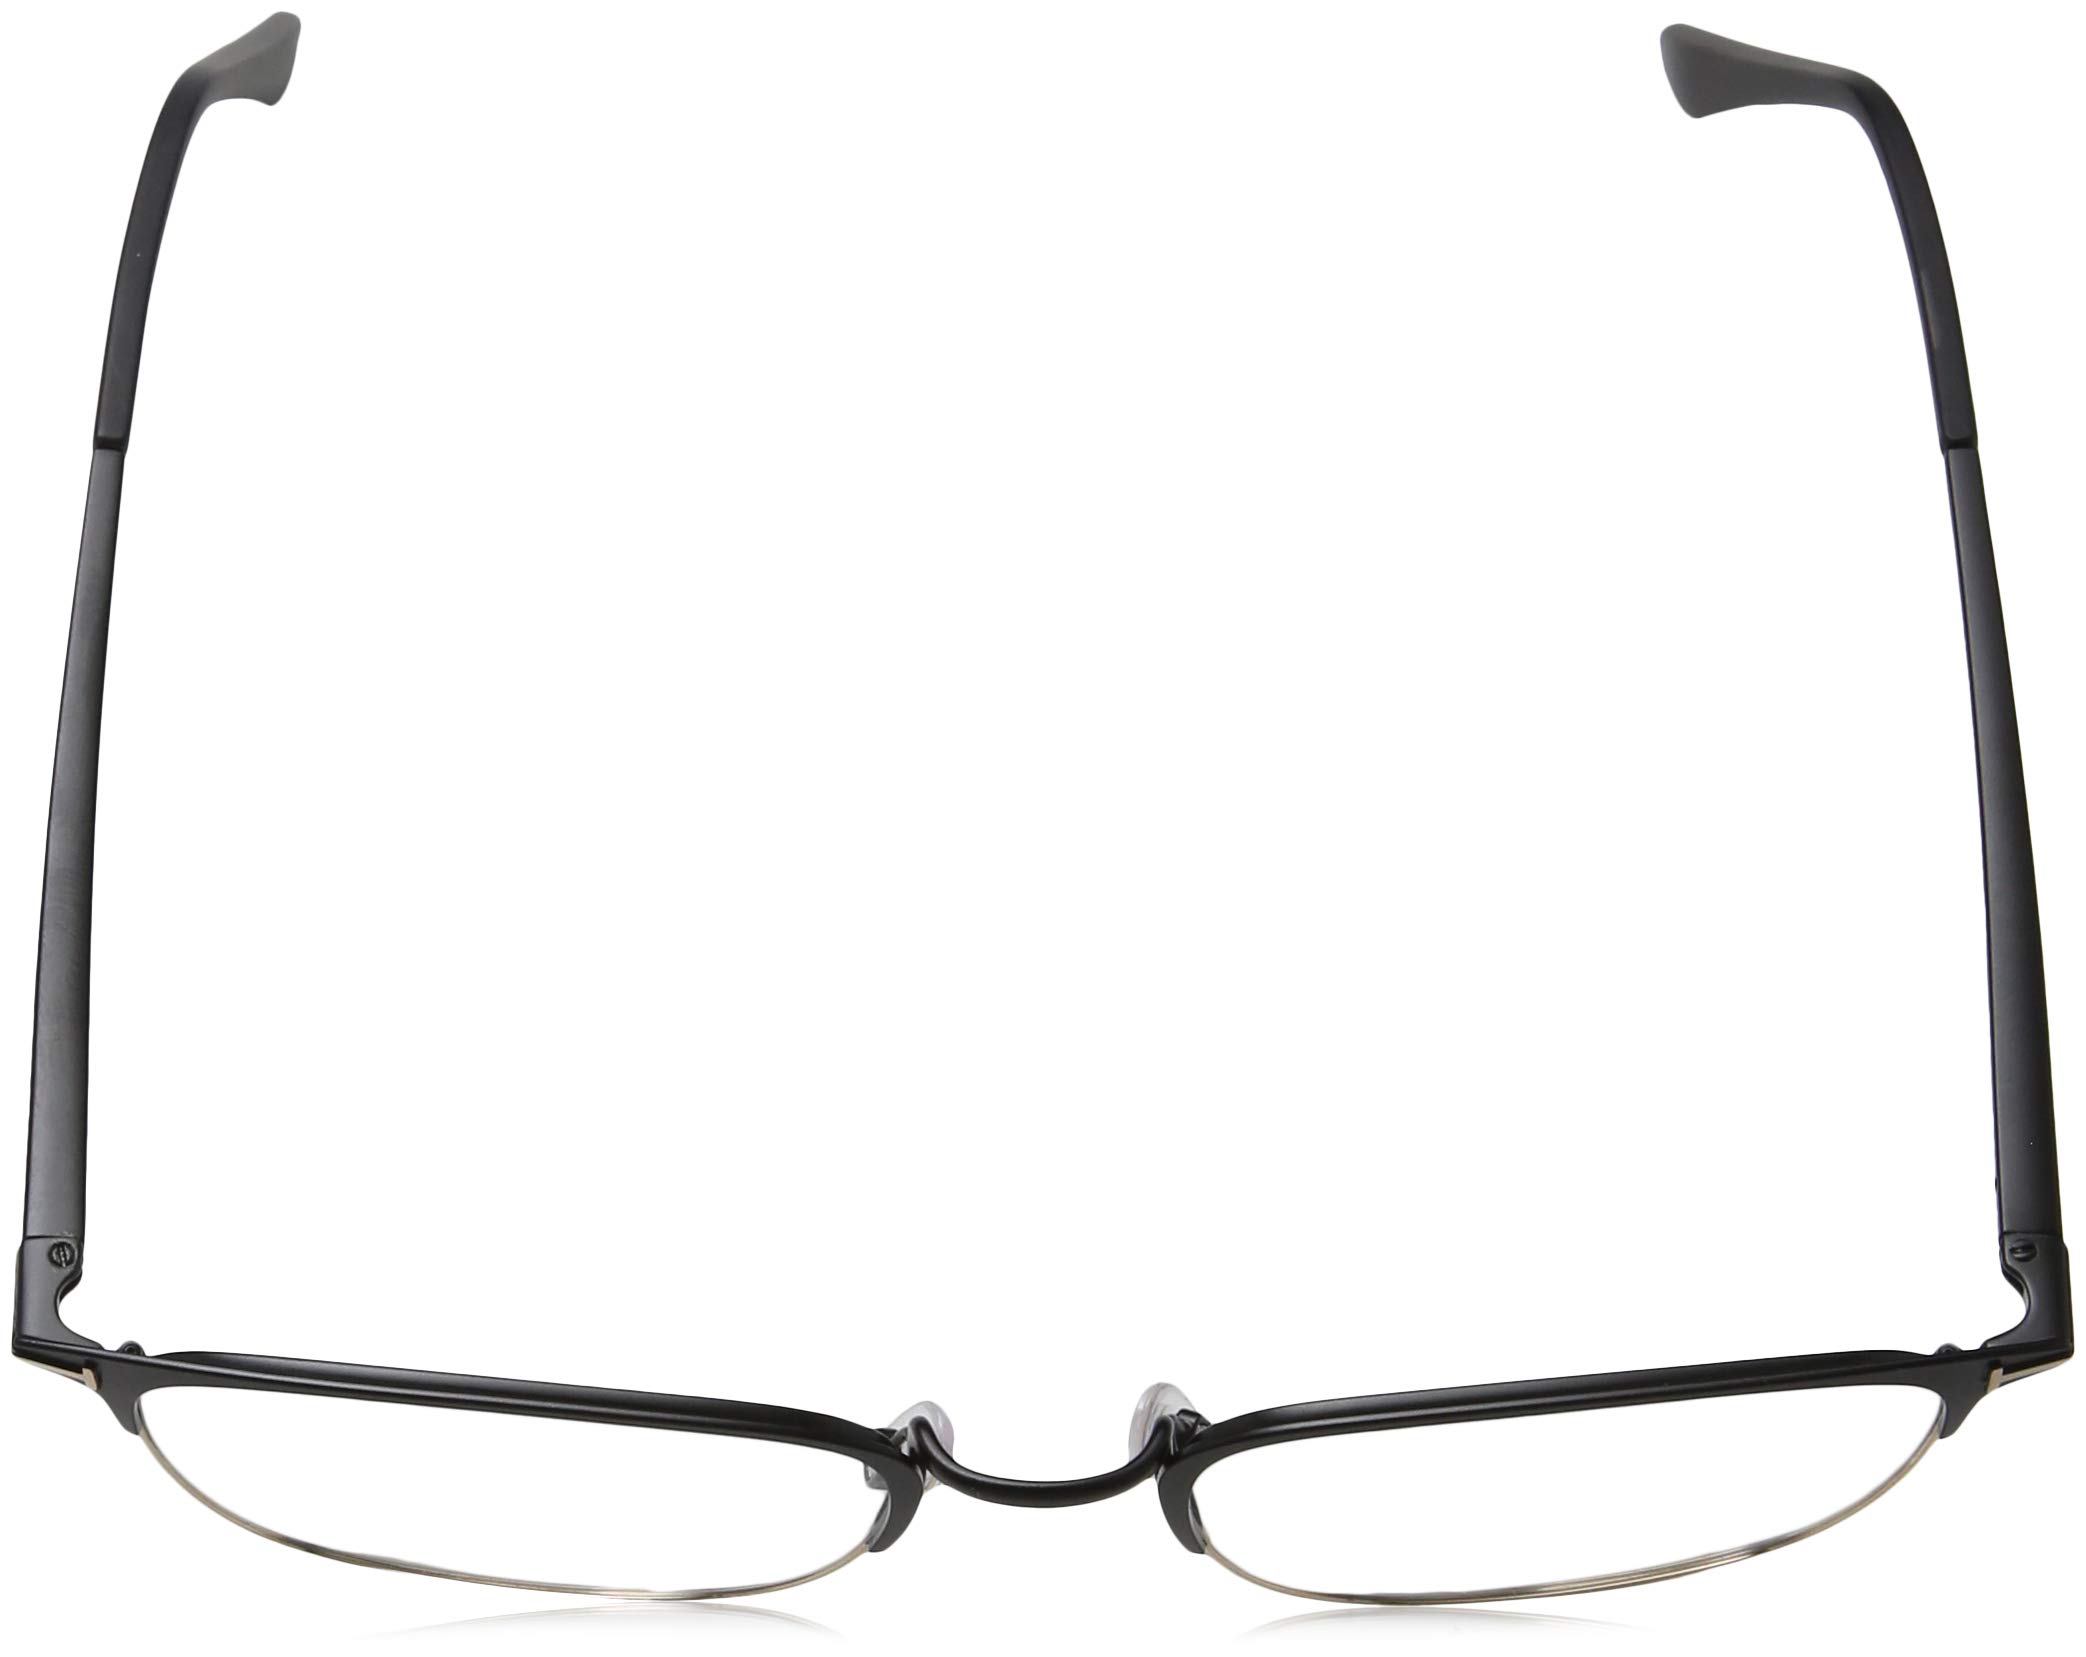 Mua Eyeglasses Tom Ford FT 5453 002 Matte Black, Shiny Rose Gold trên  Amazon Mỹ chính hãng 2023 | Fado